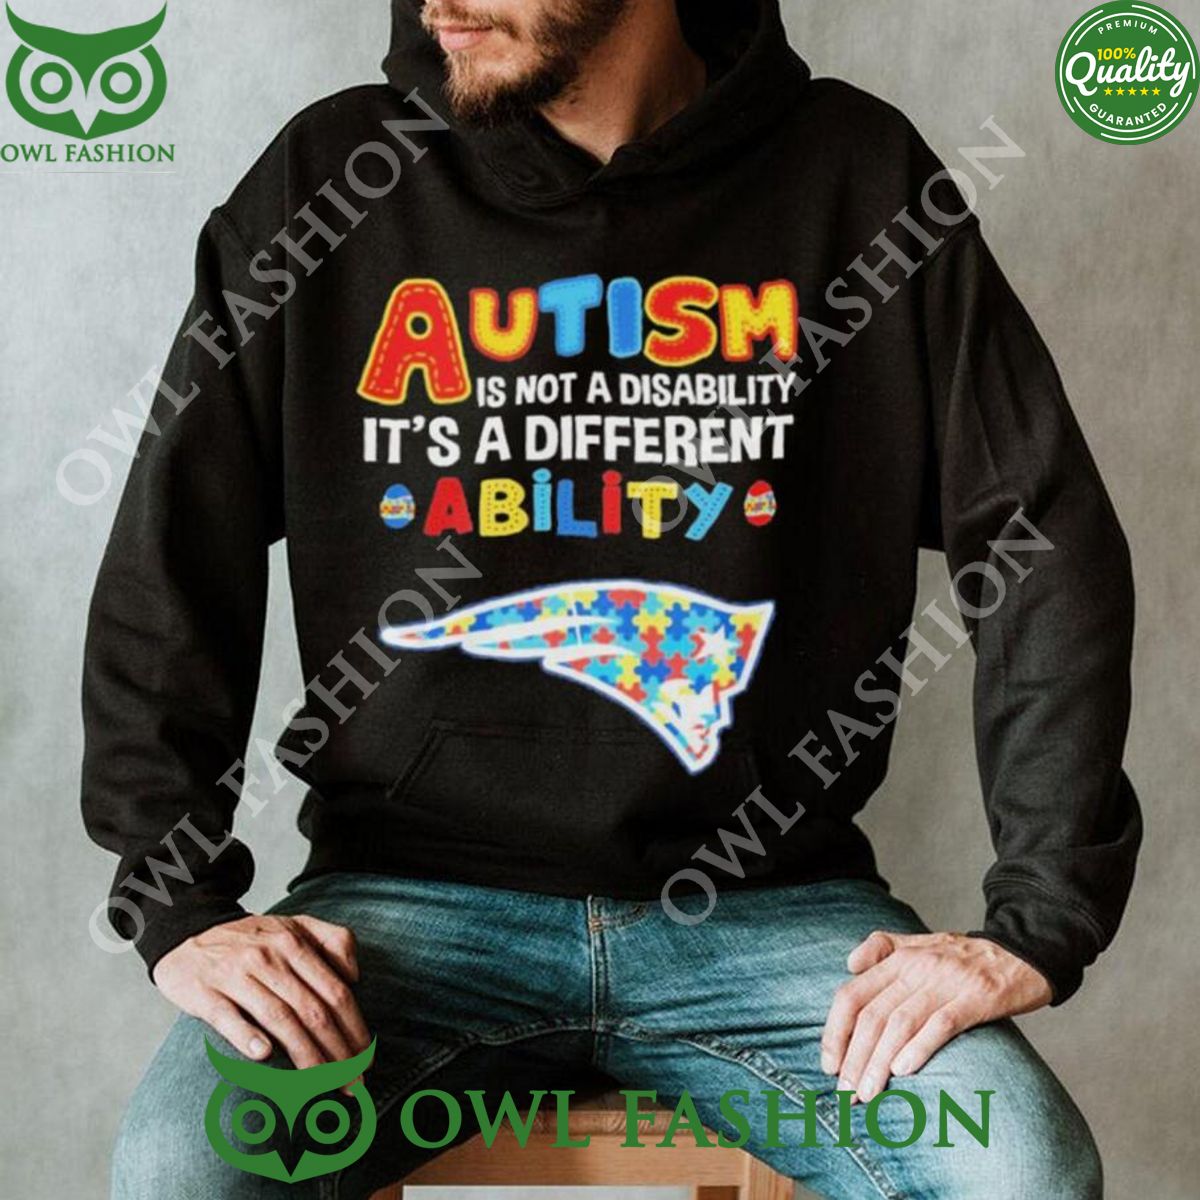 New England Patriots Autism Premium NFL 2D Hoodie Shirt